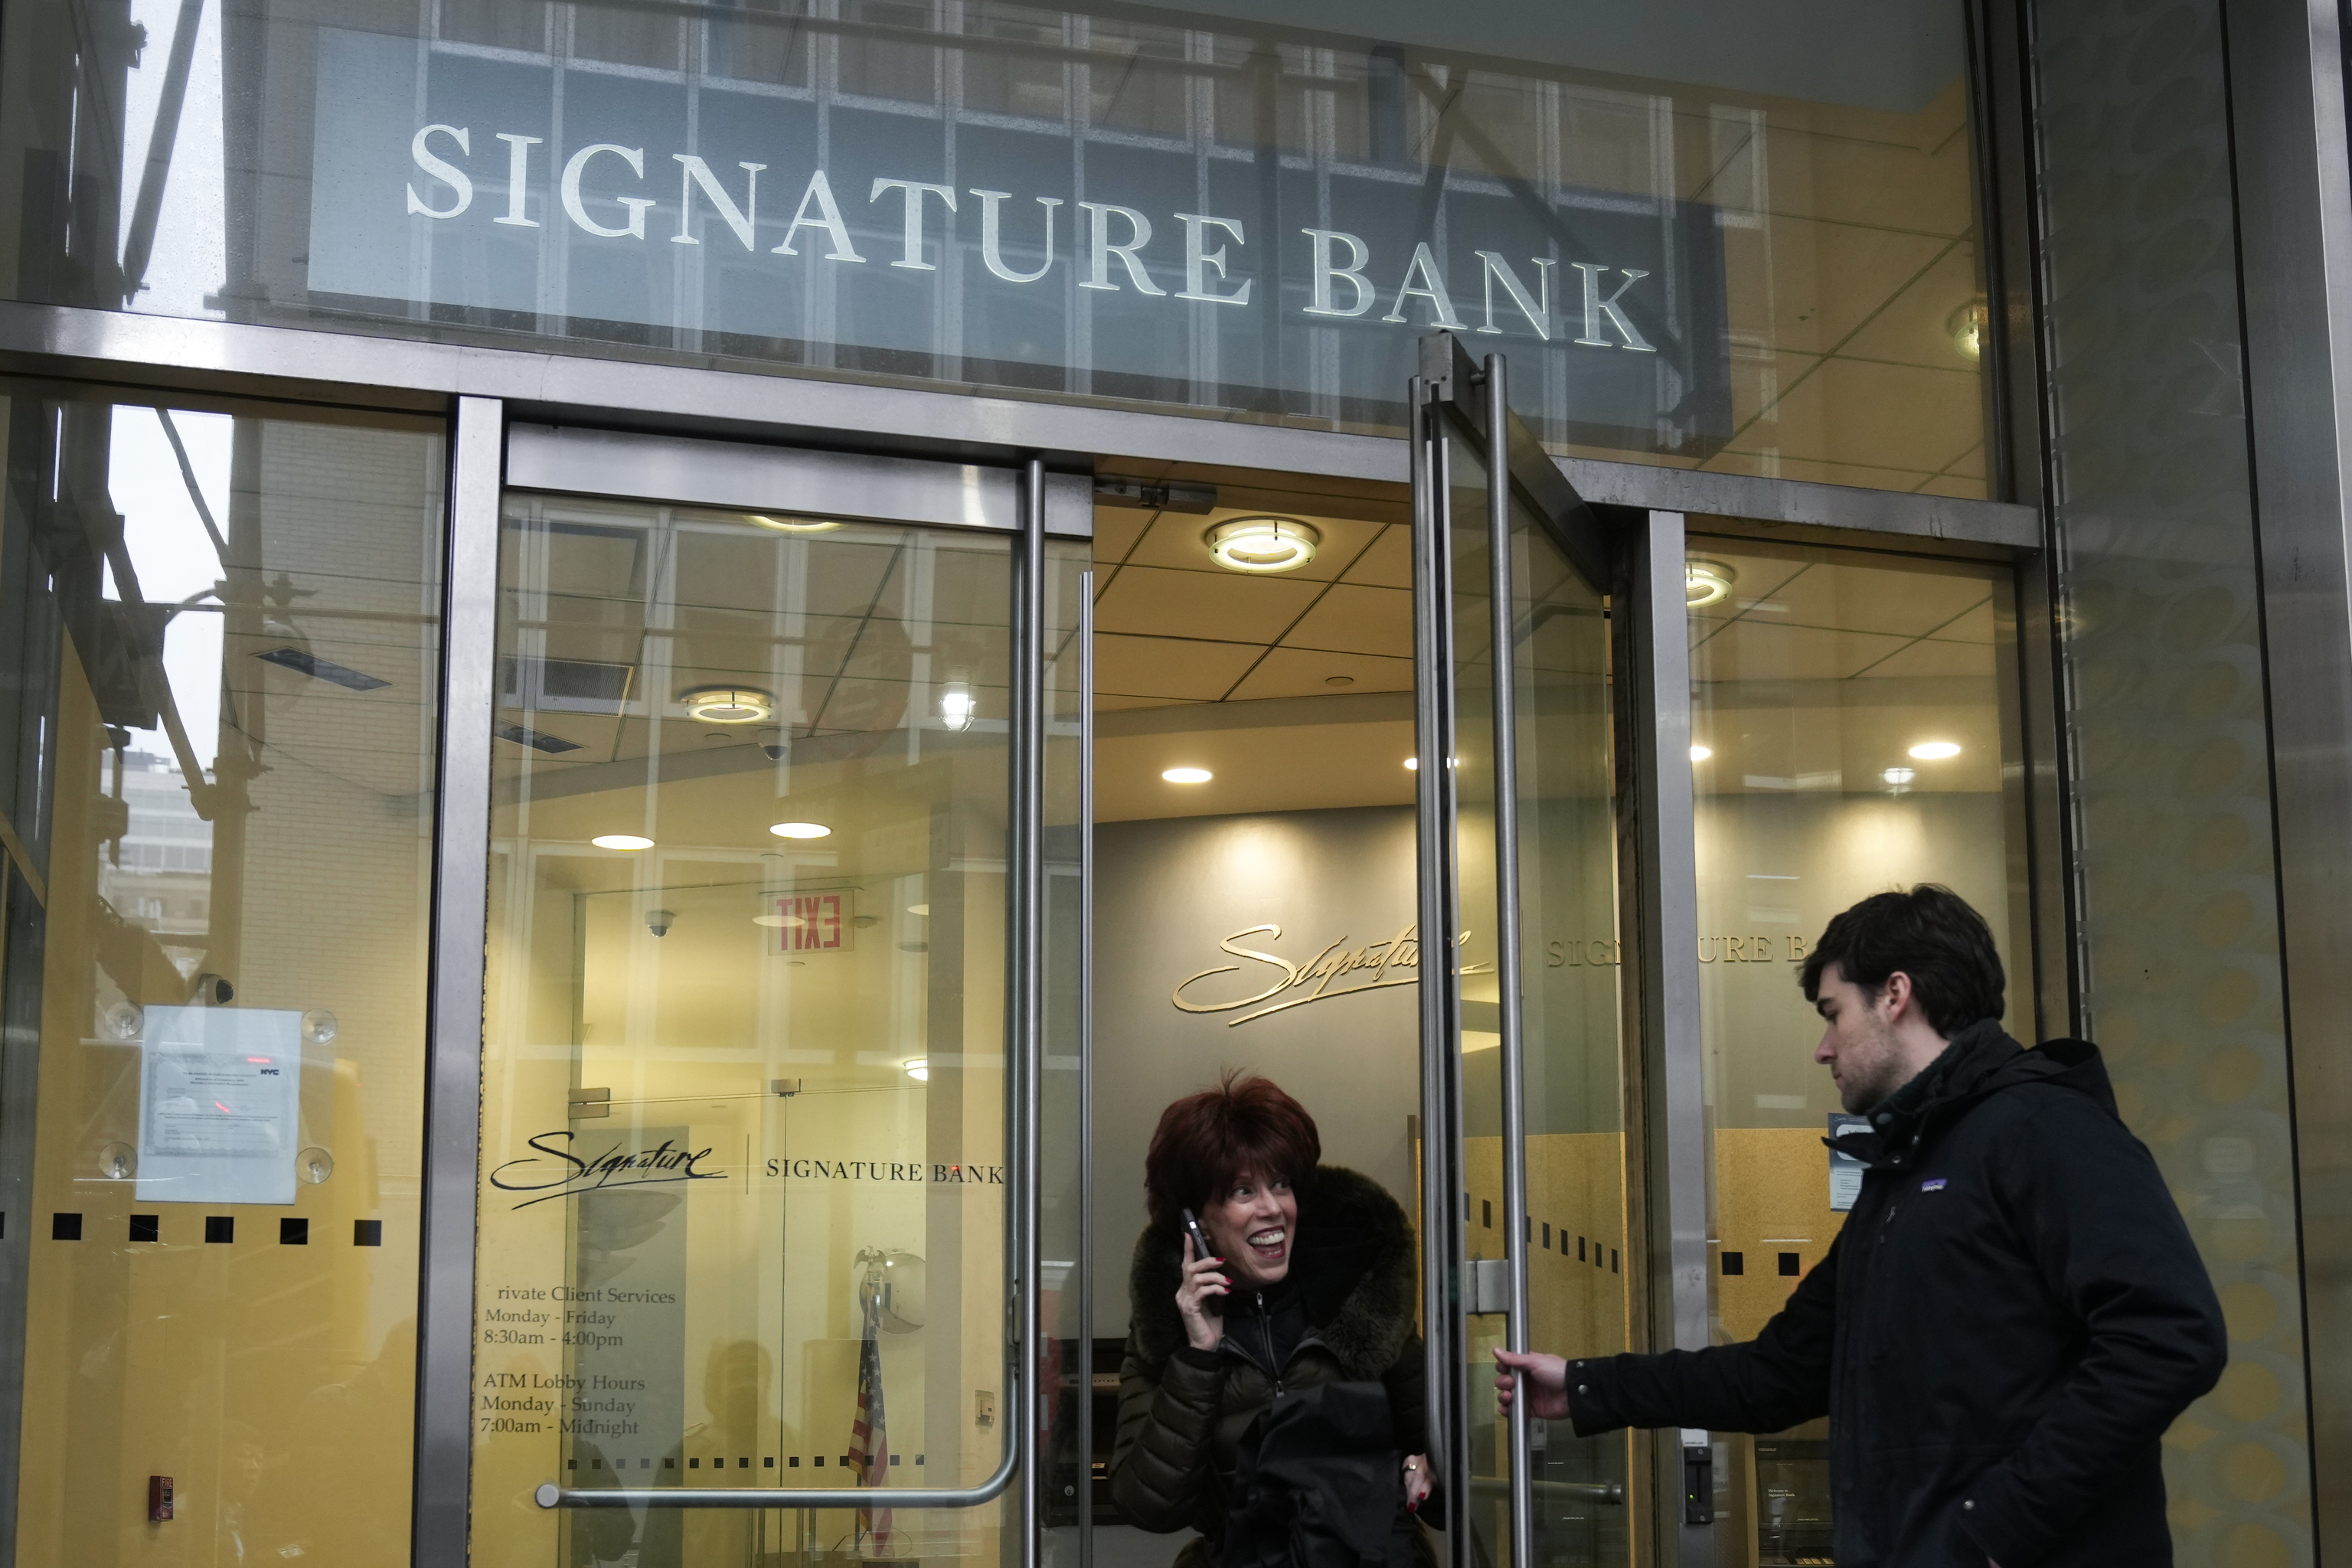 Oficinas del Signature Bank, adquirido por el New York Community Bank.